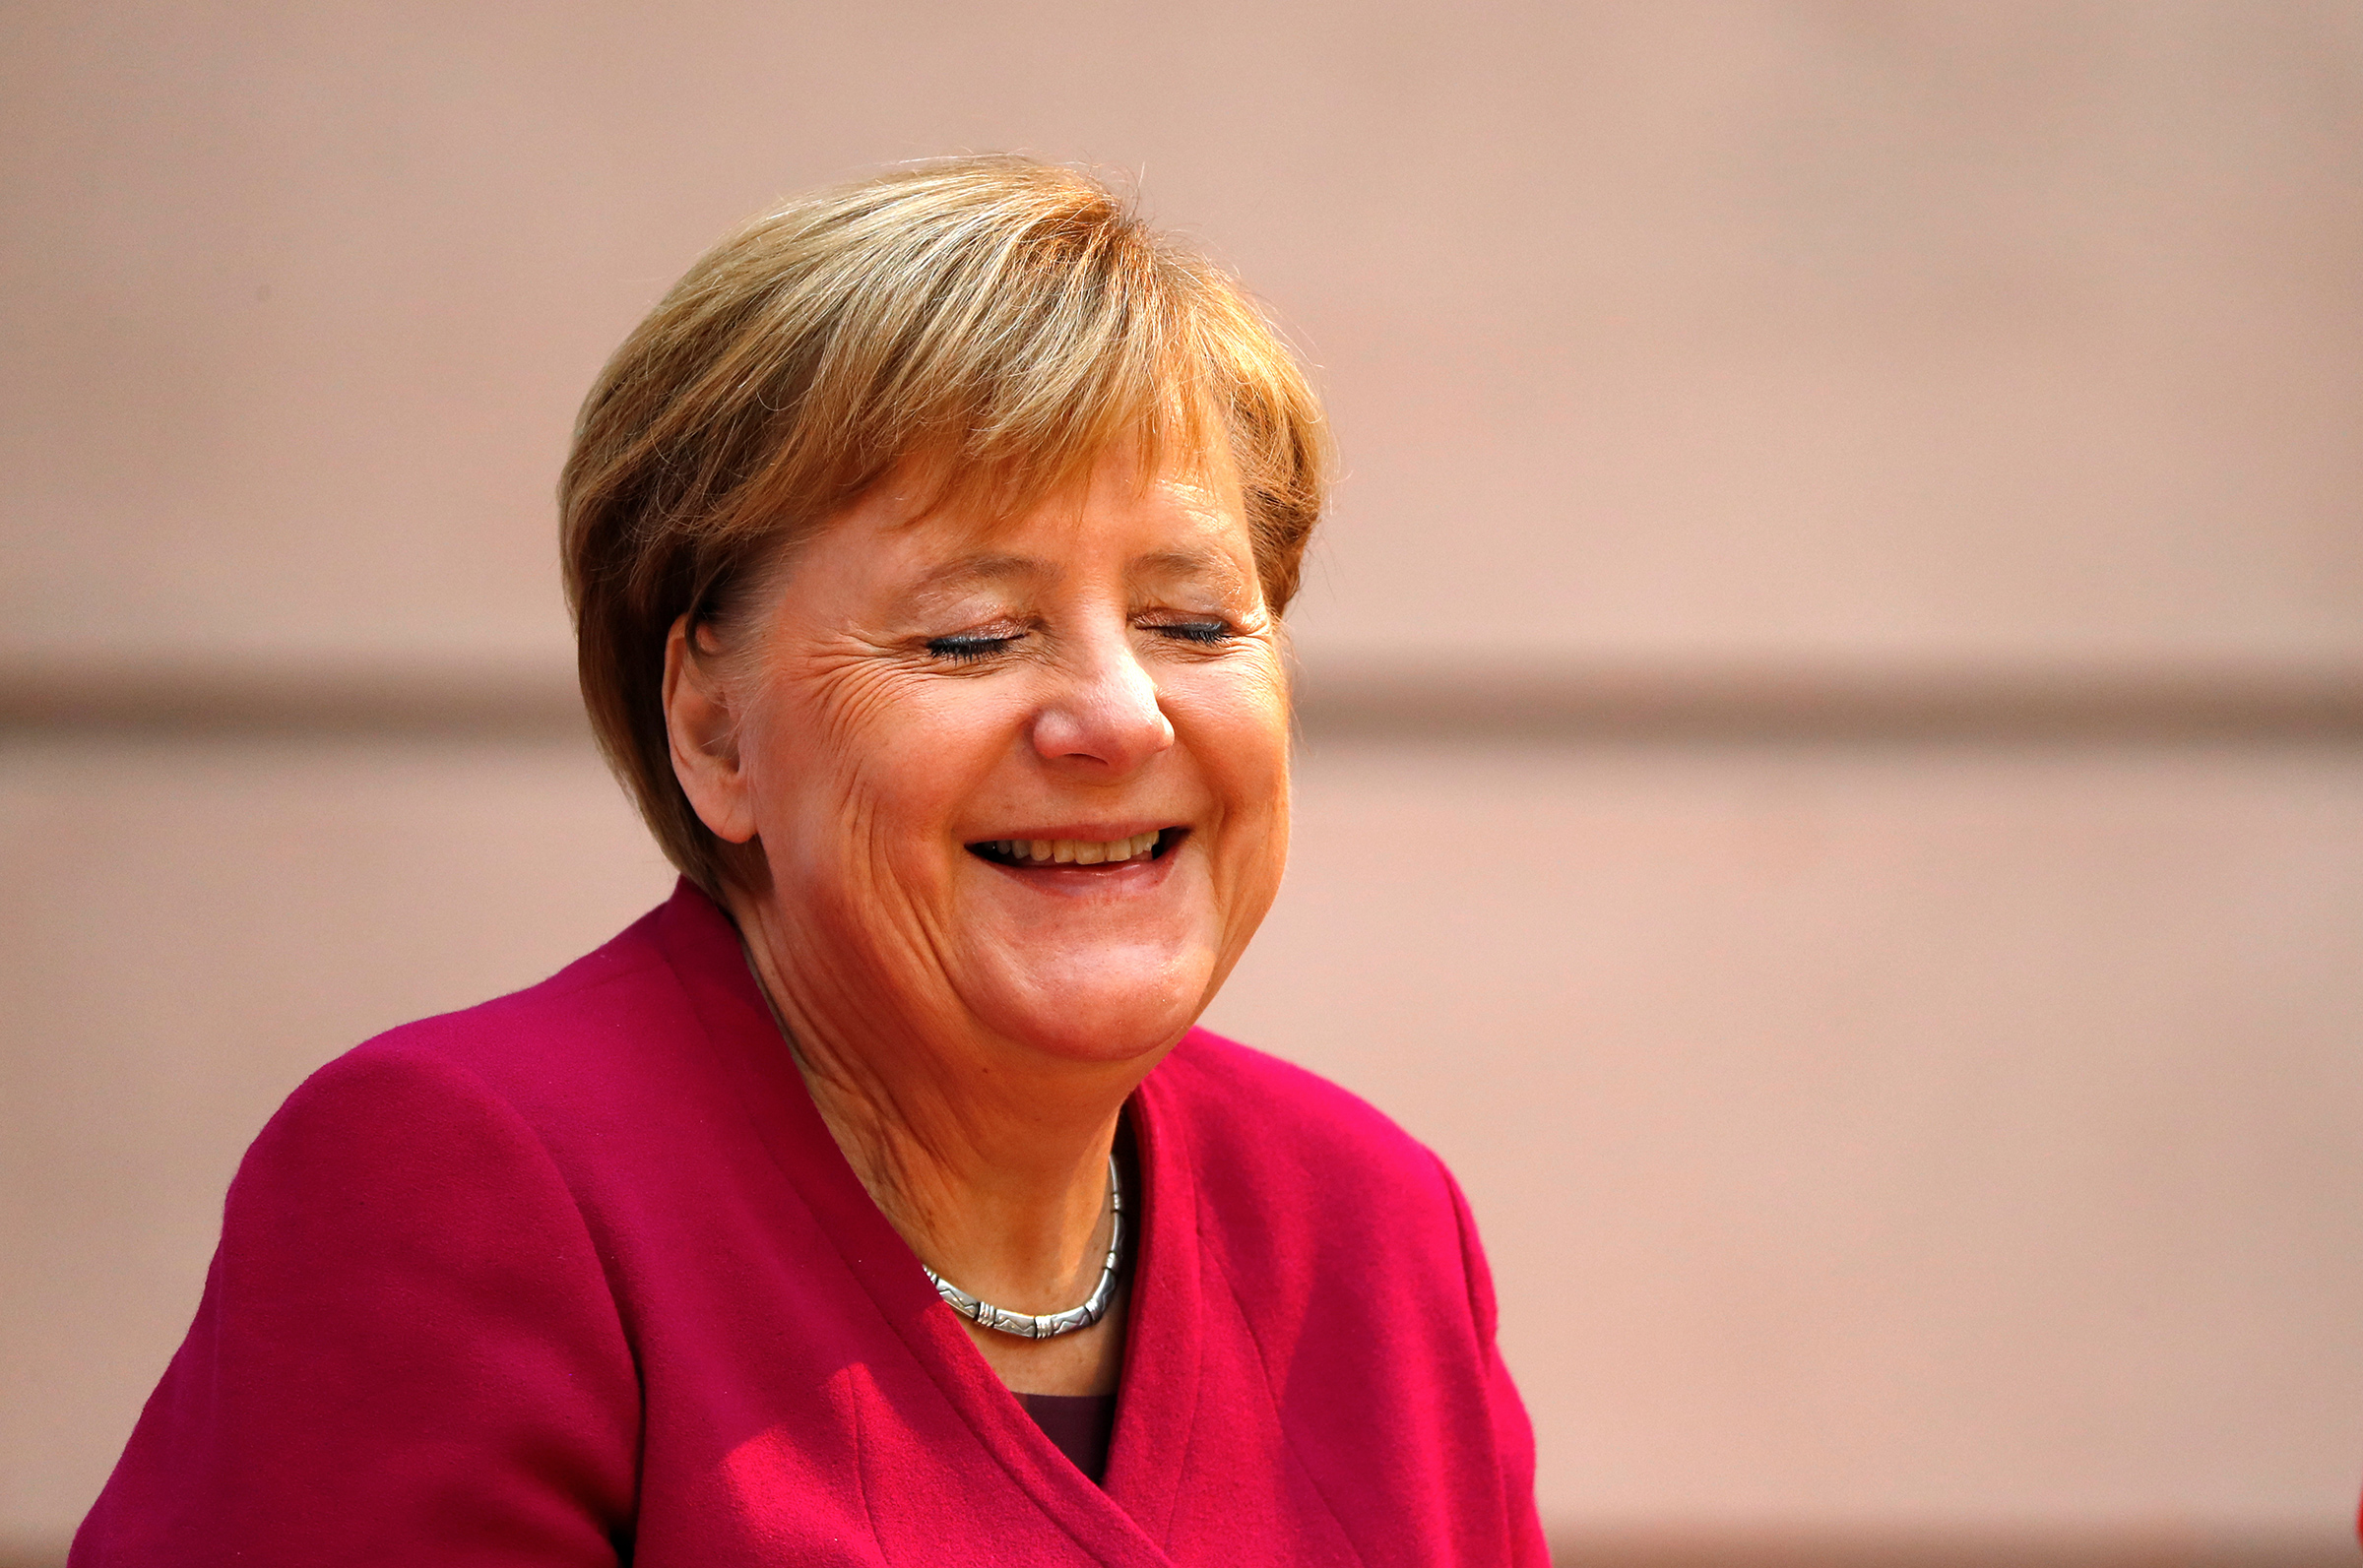 <p>Канцлер Германии Ангела Меркель на мероприятии, посвященном столетию с момента получения немецкими женщинами права голосовать. 12 ноября 2018 года, Берлин</p>
